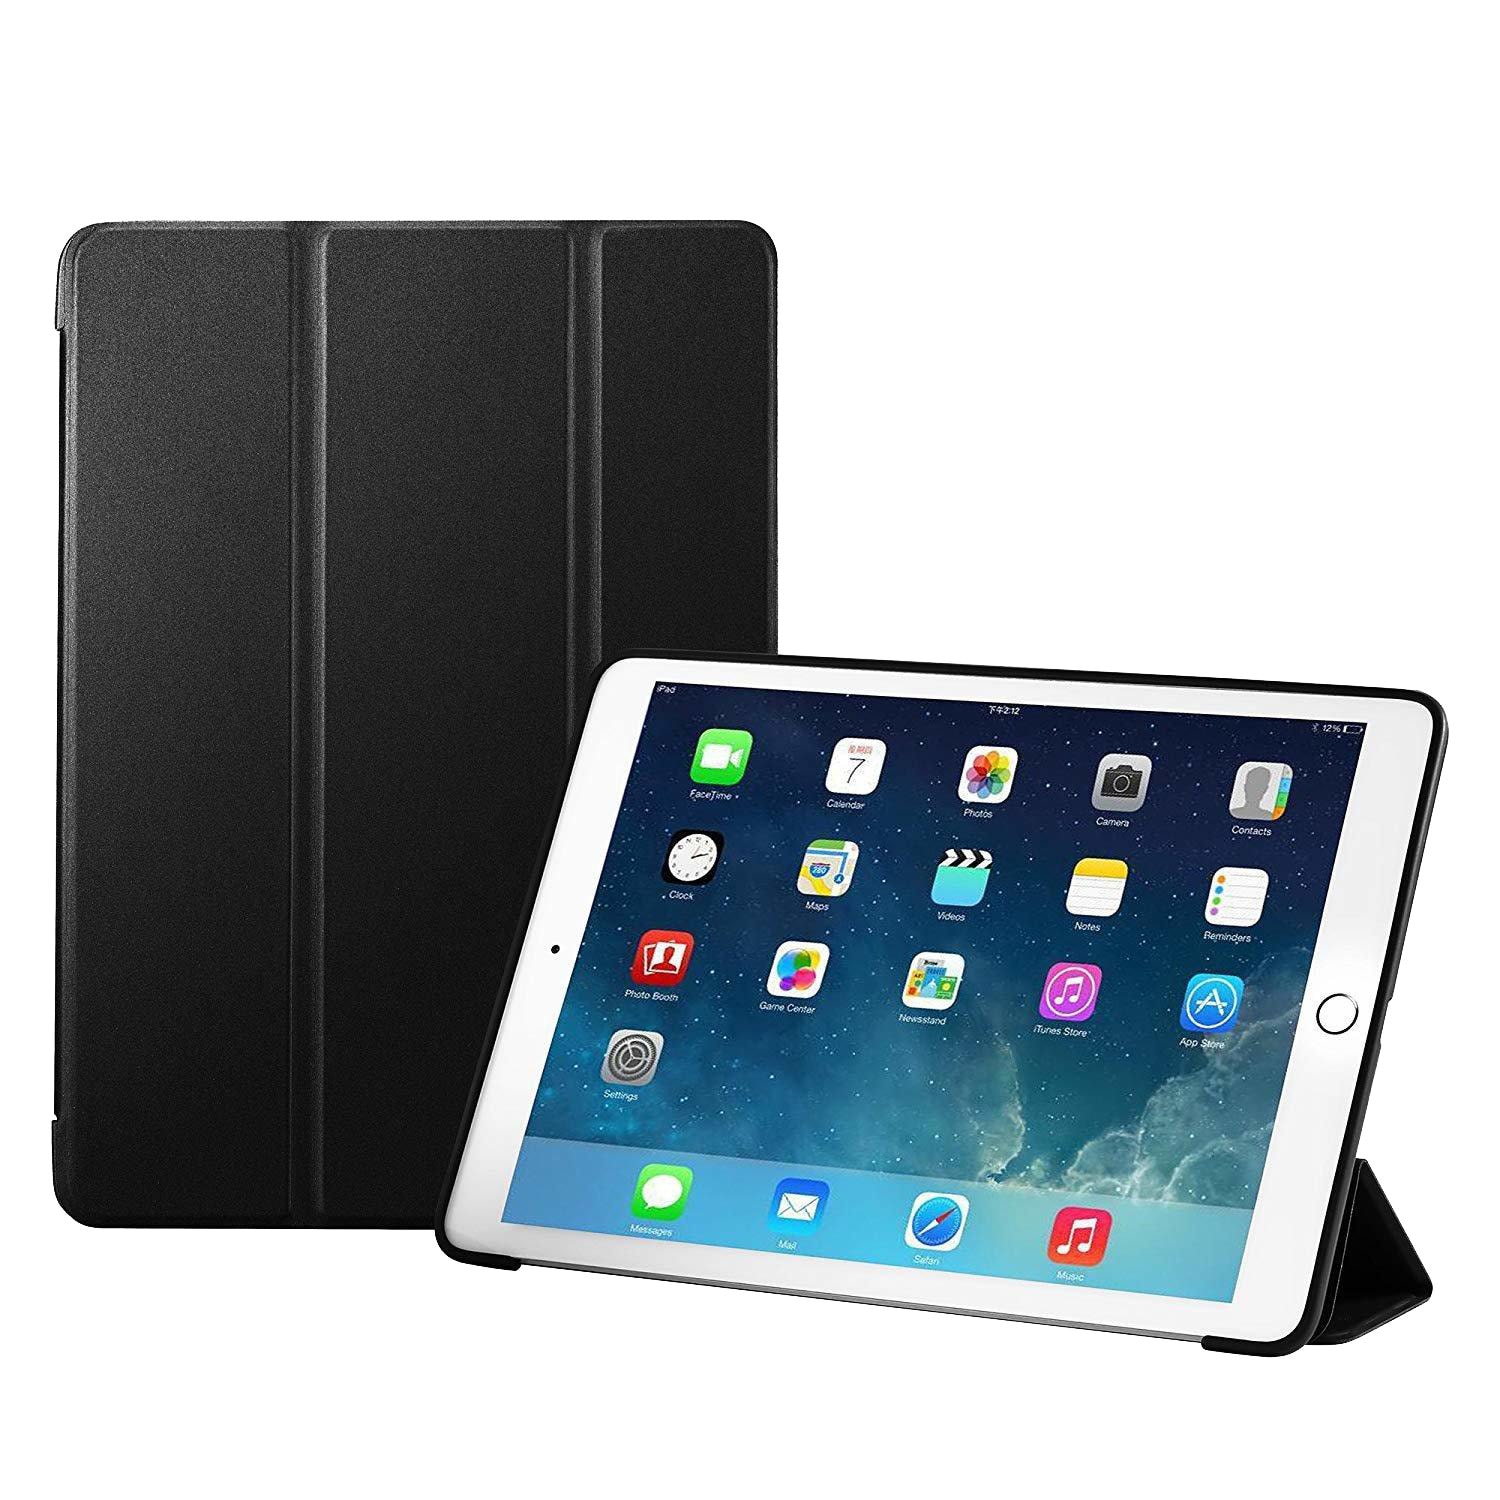 Smartdeksel til iPad 5/6 Air 1/2, sort stativ 9,7""